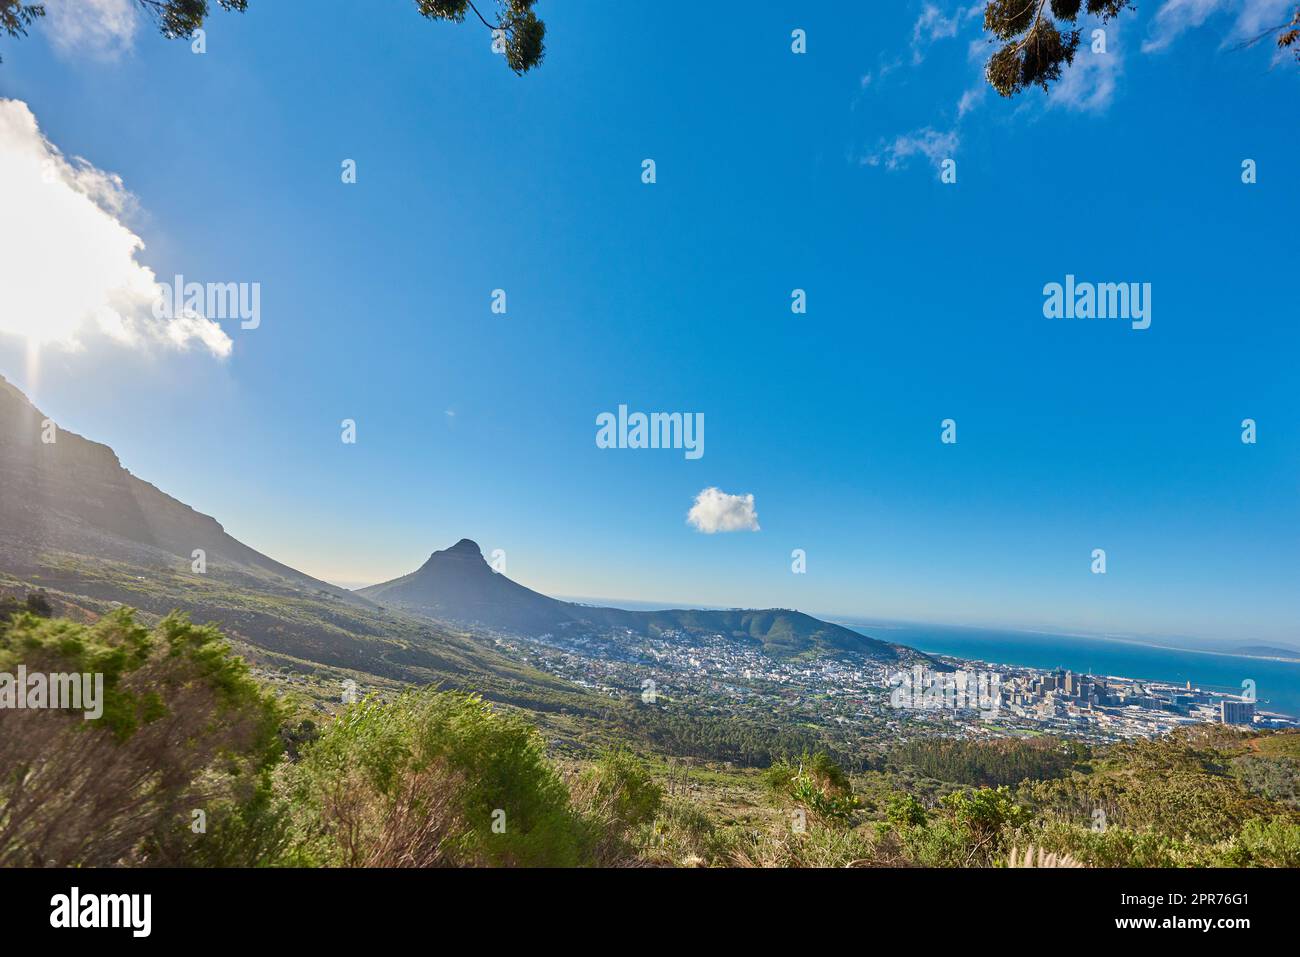 Landschaft eines Berges und einer Stadt in Südafrika. Weitwinkel von Büschen und wilden Büschen vor einem hellblauen Horizont von Kapstadt. Blick auf Lions Head, ein beliebtes Reiseziel in der Nähe des Tafelbergs Stockfoto